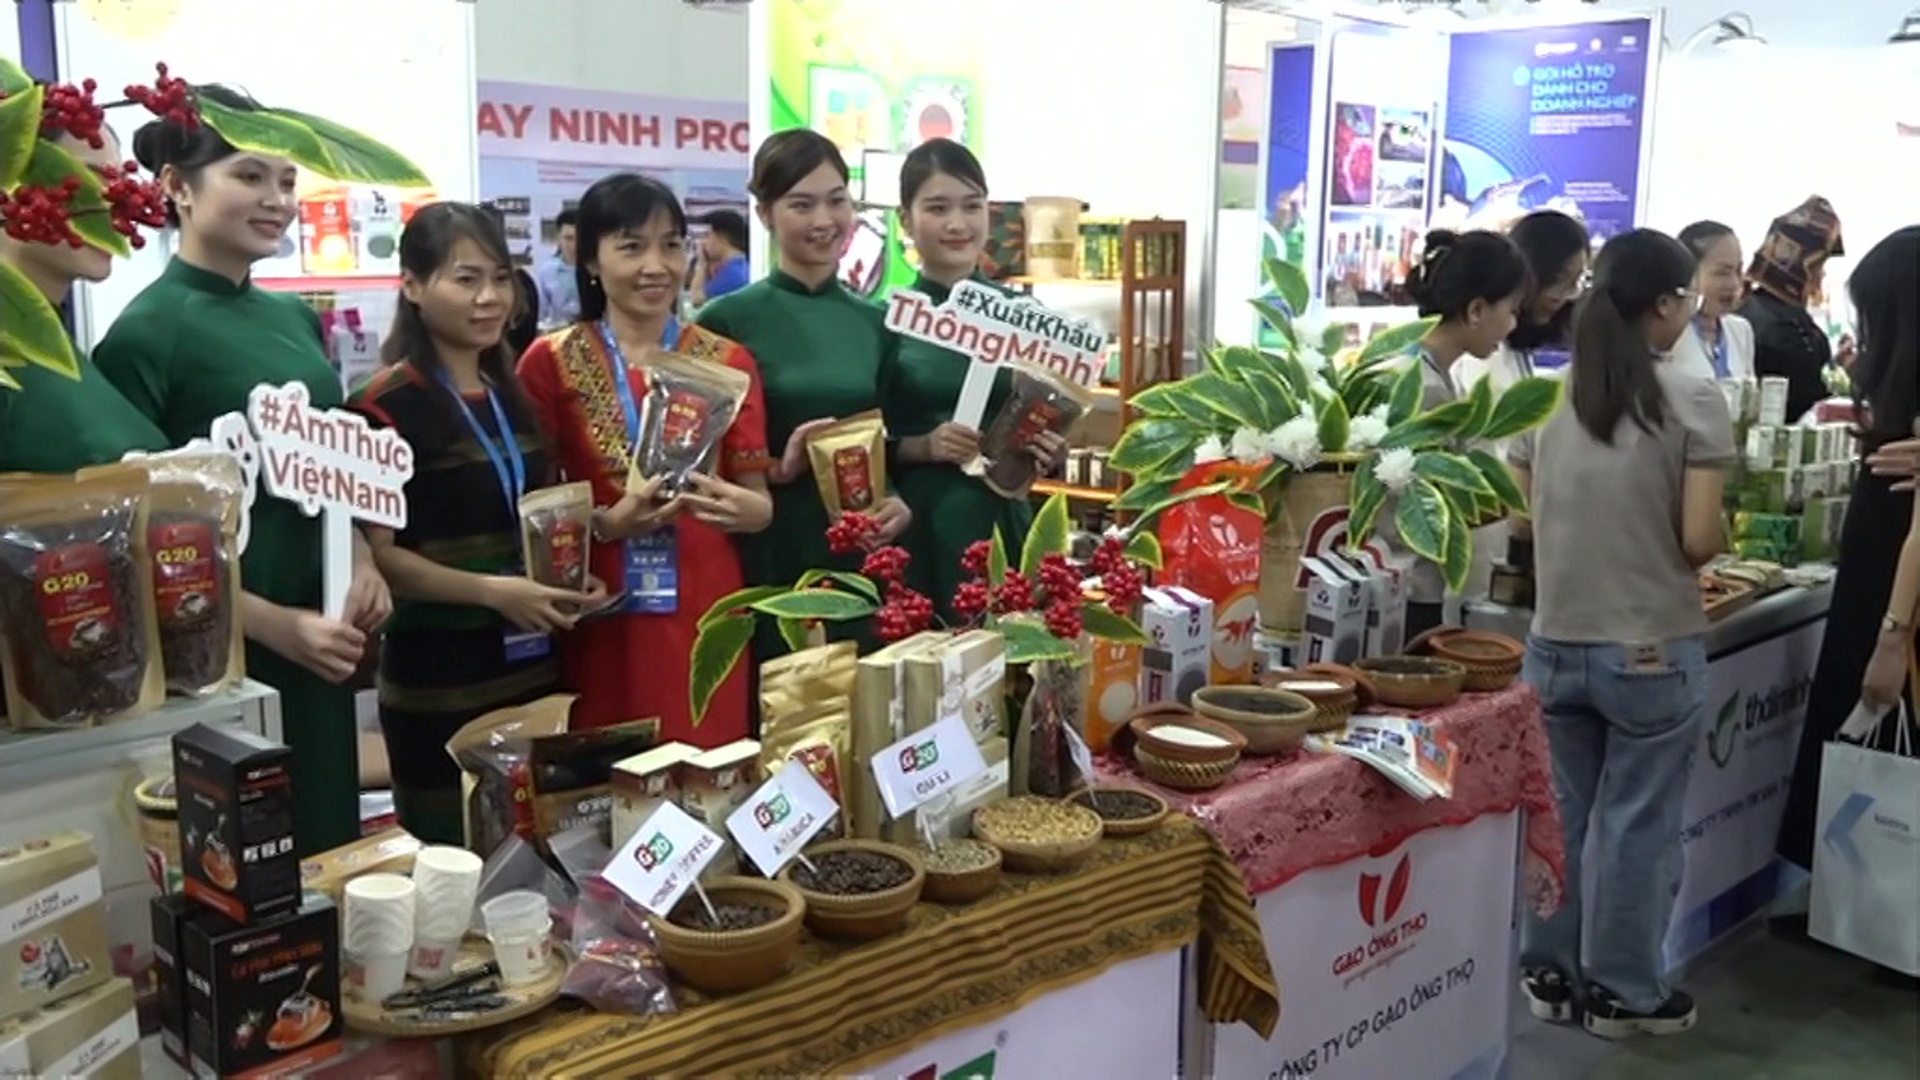 ⋆ 50 лучших идей для малого бизнеса во вьетнаме на 2021 год ⋆ qoodis.com